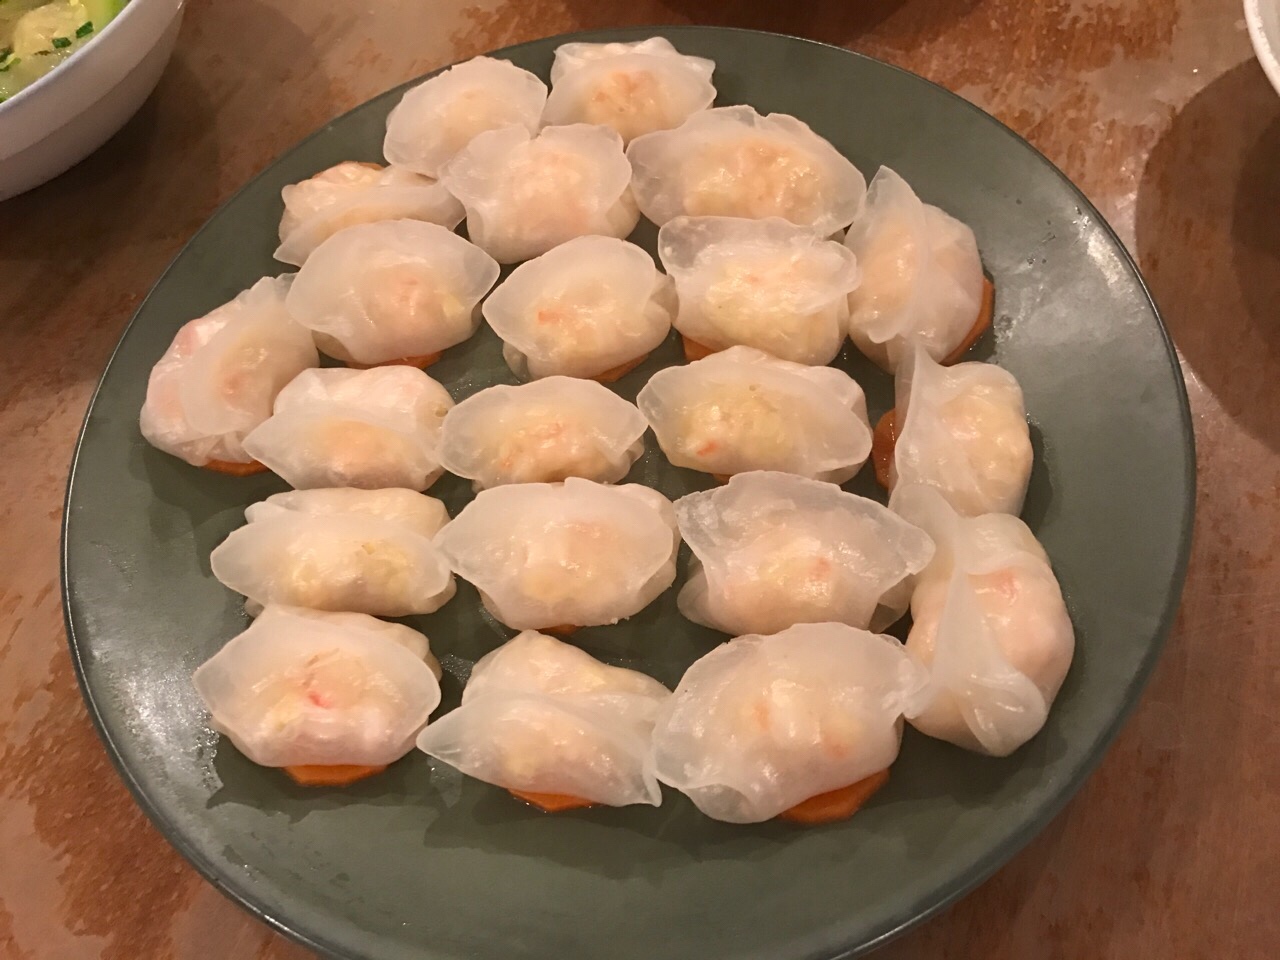 广式虾饺